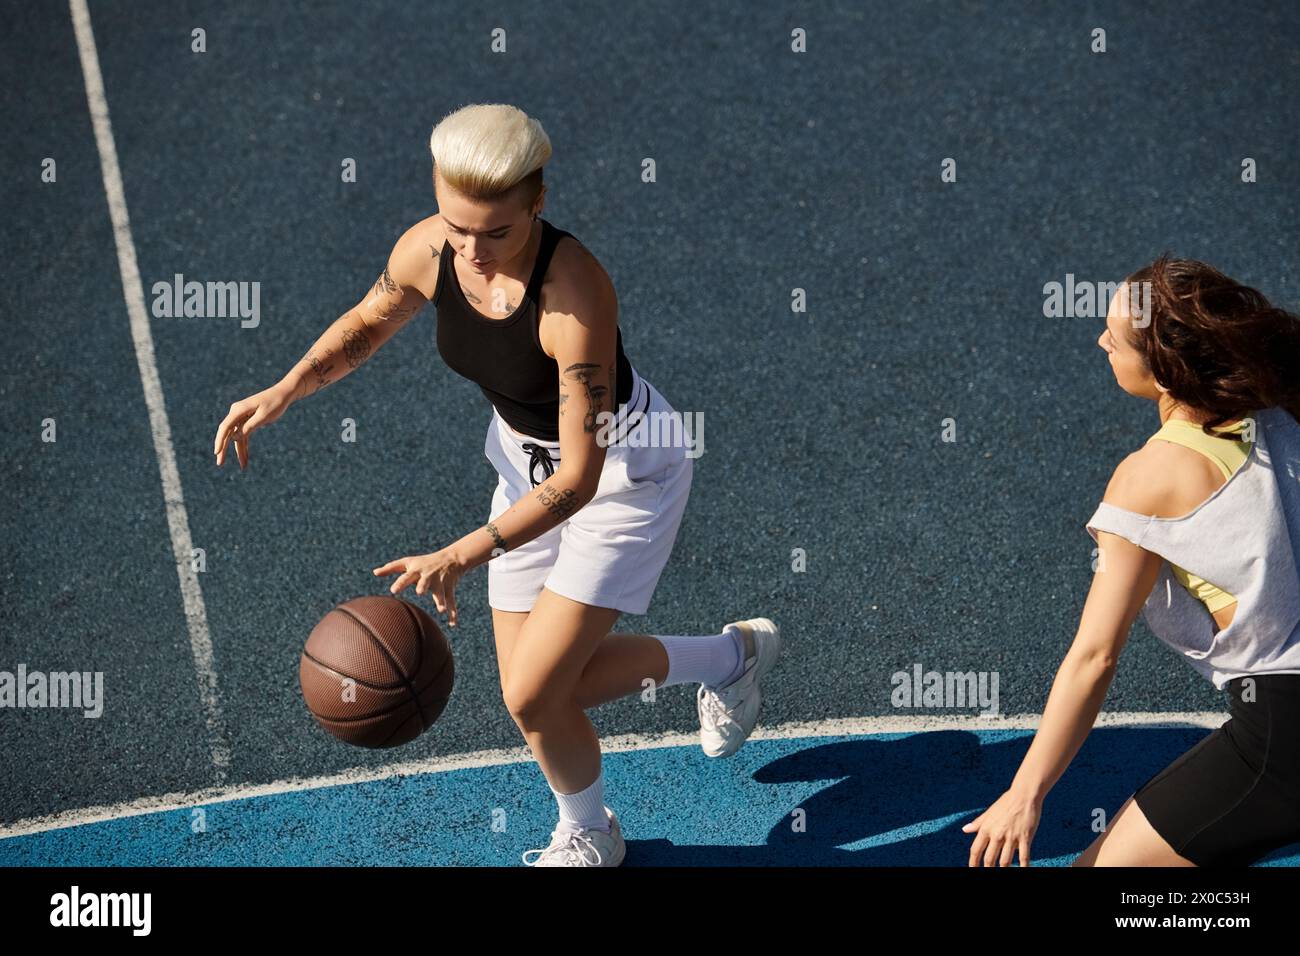 Un match intense de basket-ball entre deux jeunes femmes, des amies mettant en valeur leurs compétences athlétiques sur le terrain extérieur en été. Banque D'Images